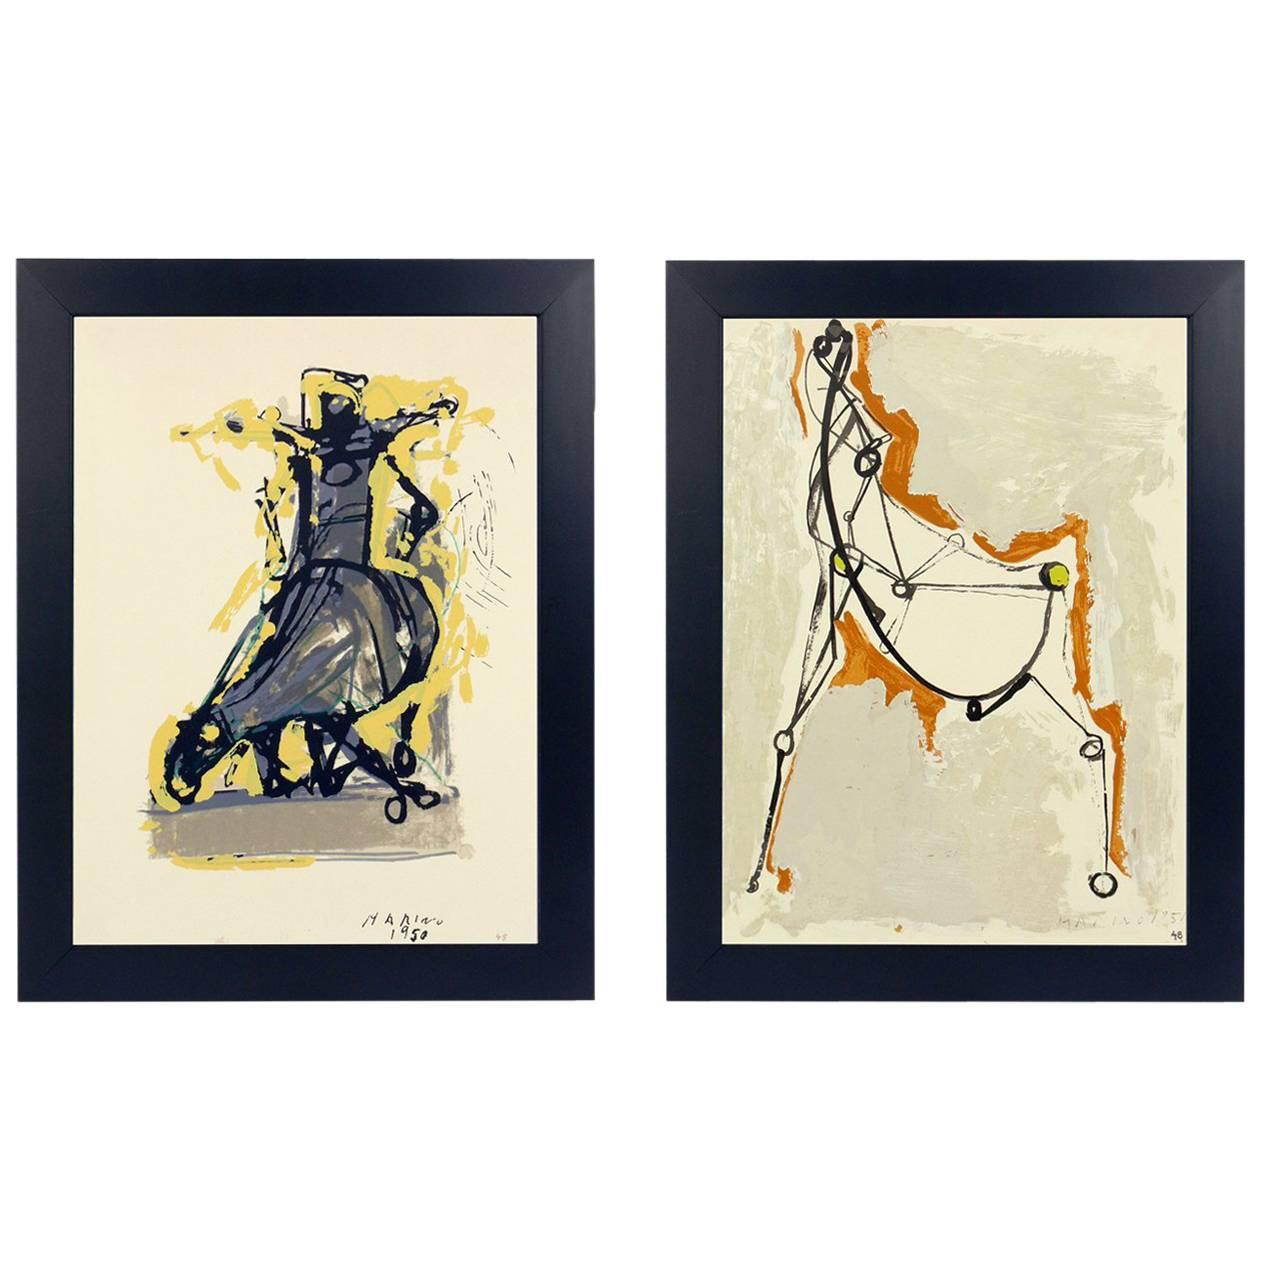 Auswahl von drei Pferde- und Reiterlithographien von Marino Marini, aus der Mappe Marino Marini, gedruckt bei Carl Schunemann, Deutschland, um 1968. Sie wurden in saubere, schwarz lackierte Galerierahmen gerahmt.